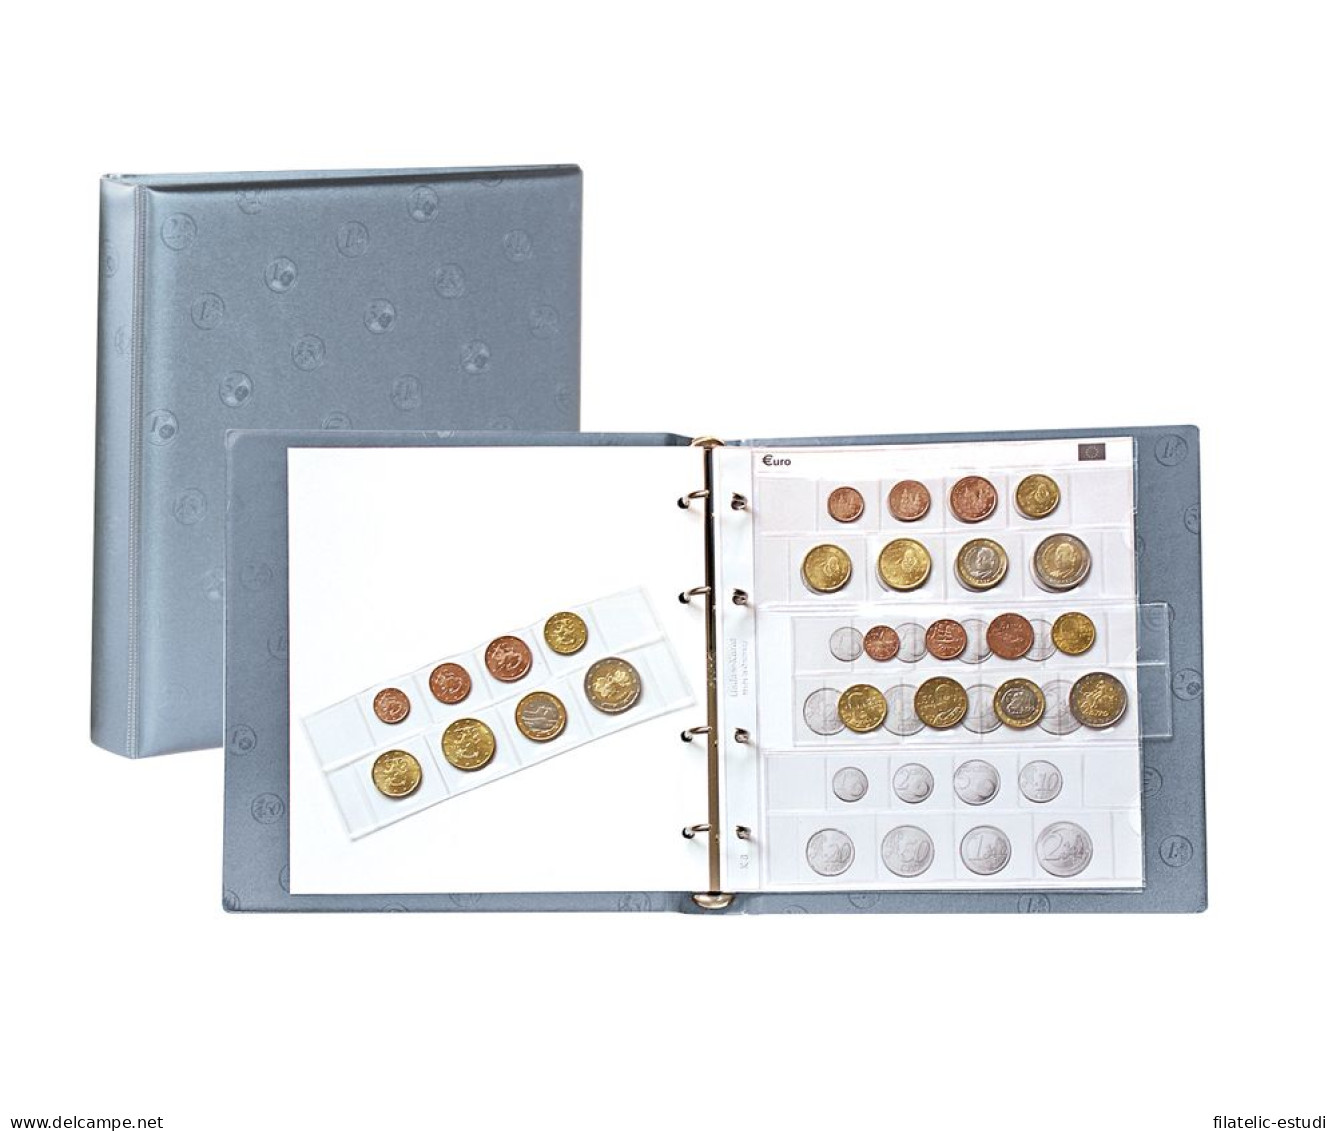 Lindner 1105-GR Karat álbum De Monedas EURO Gris - Zubehör